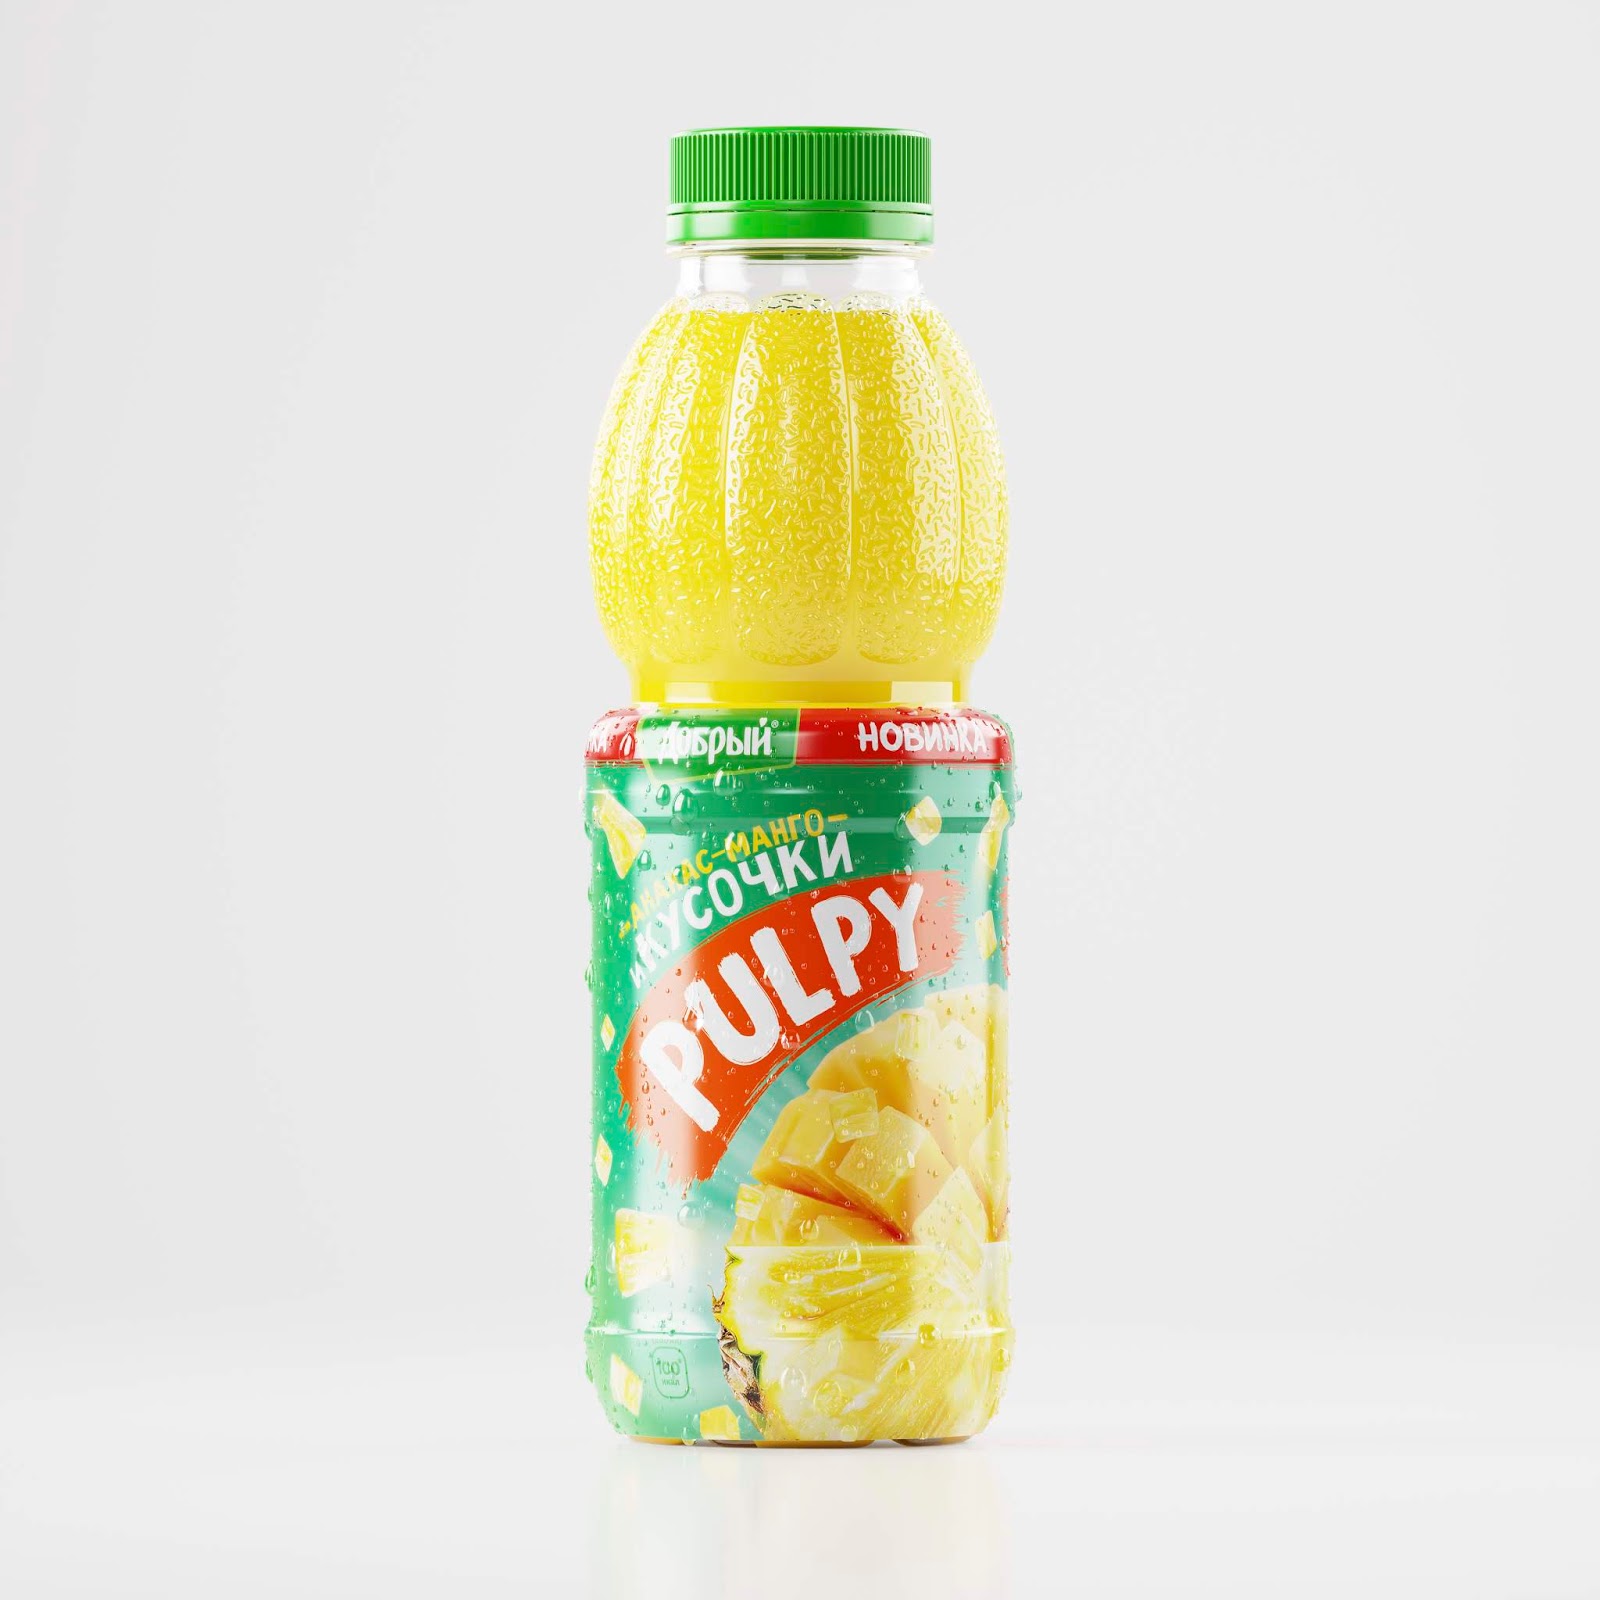 Pulpy果汁饮料包装设计